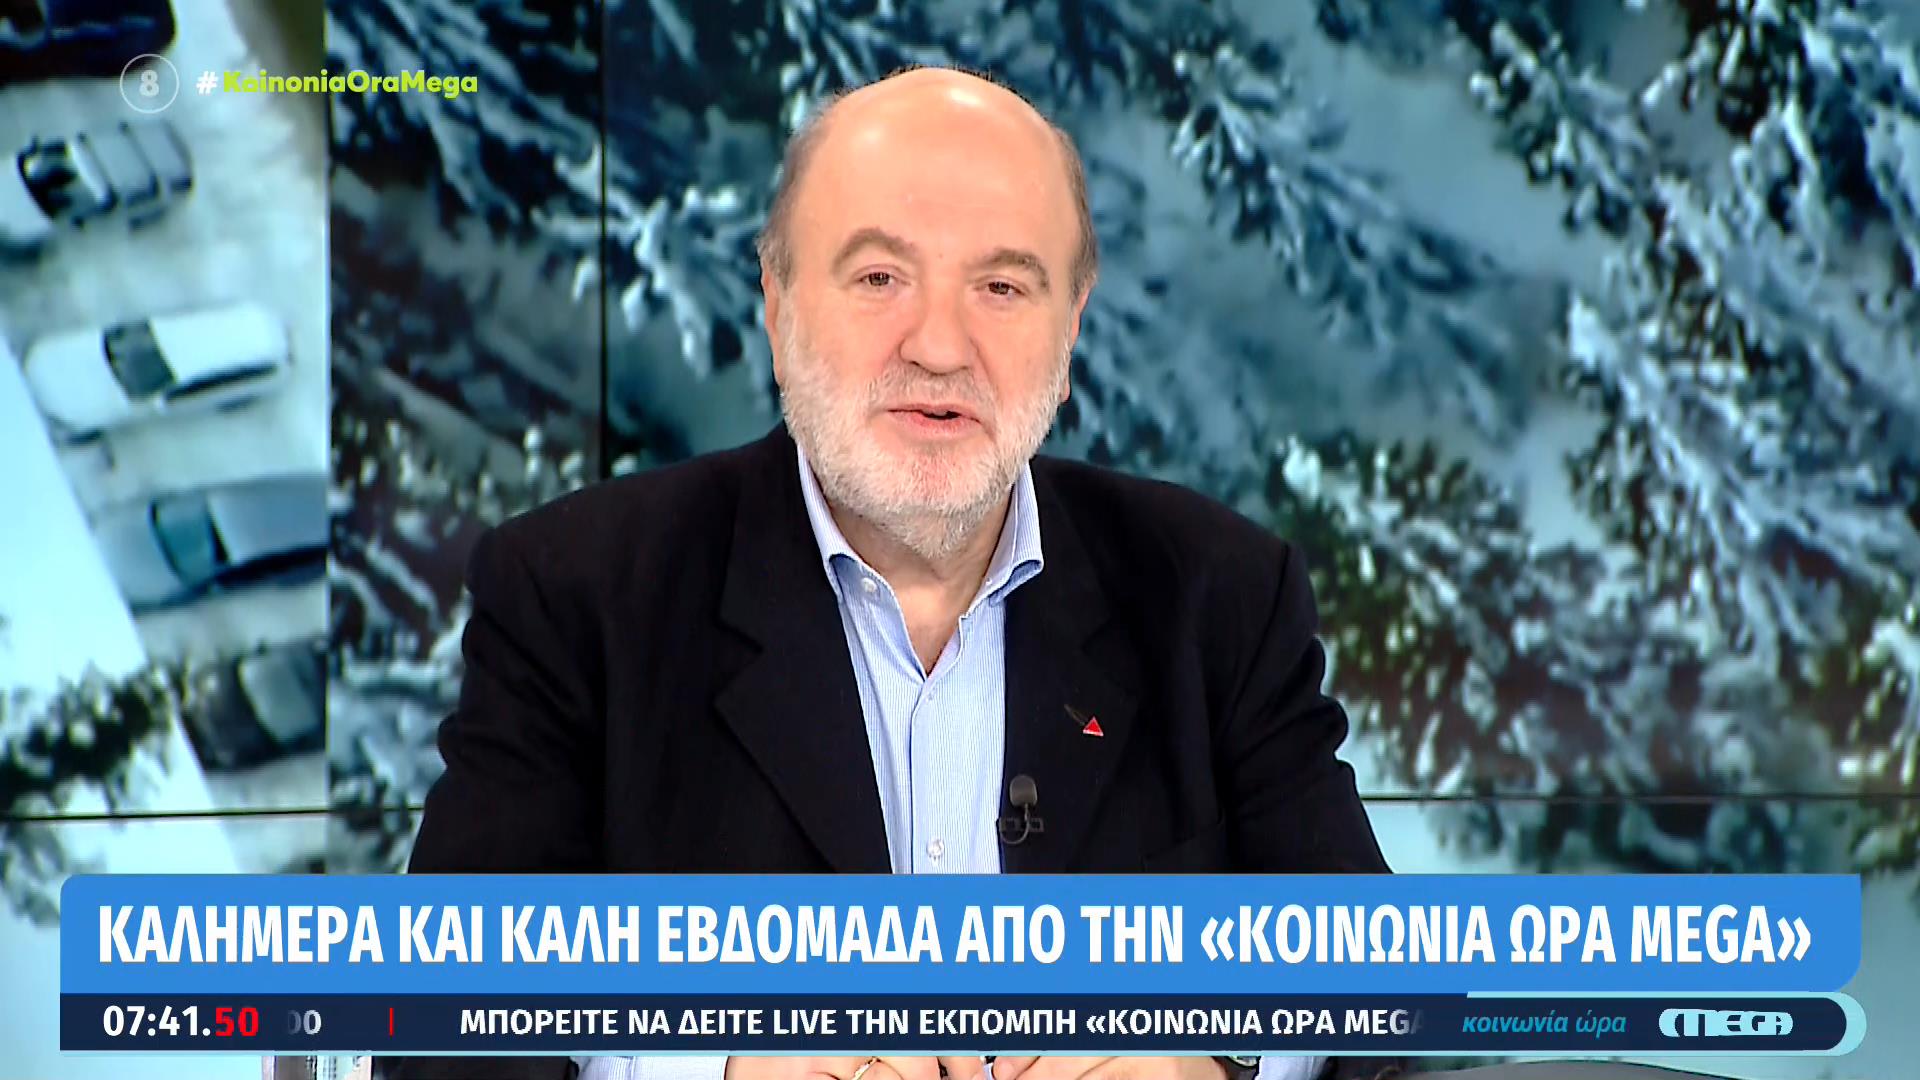 Τρ. Αλεξιάδης για το δίλημμα των εκλογών: Θα συνεχιστεί η θεσμική εκτροπή ή θα επανέλθει σε σωστή πορεία η χώρα;